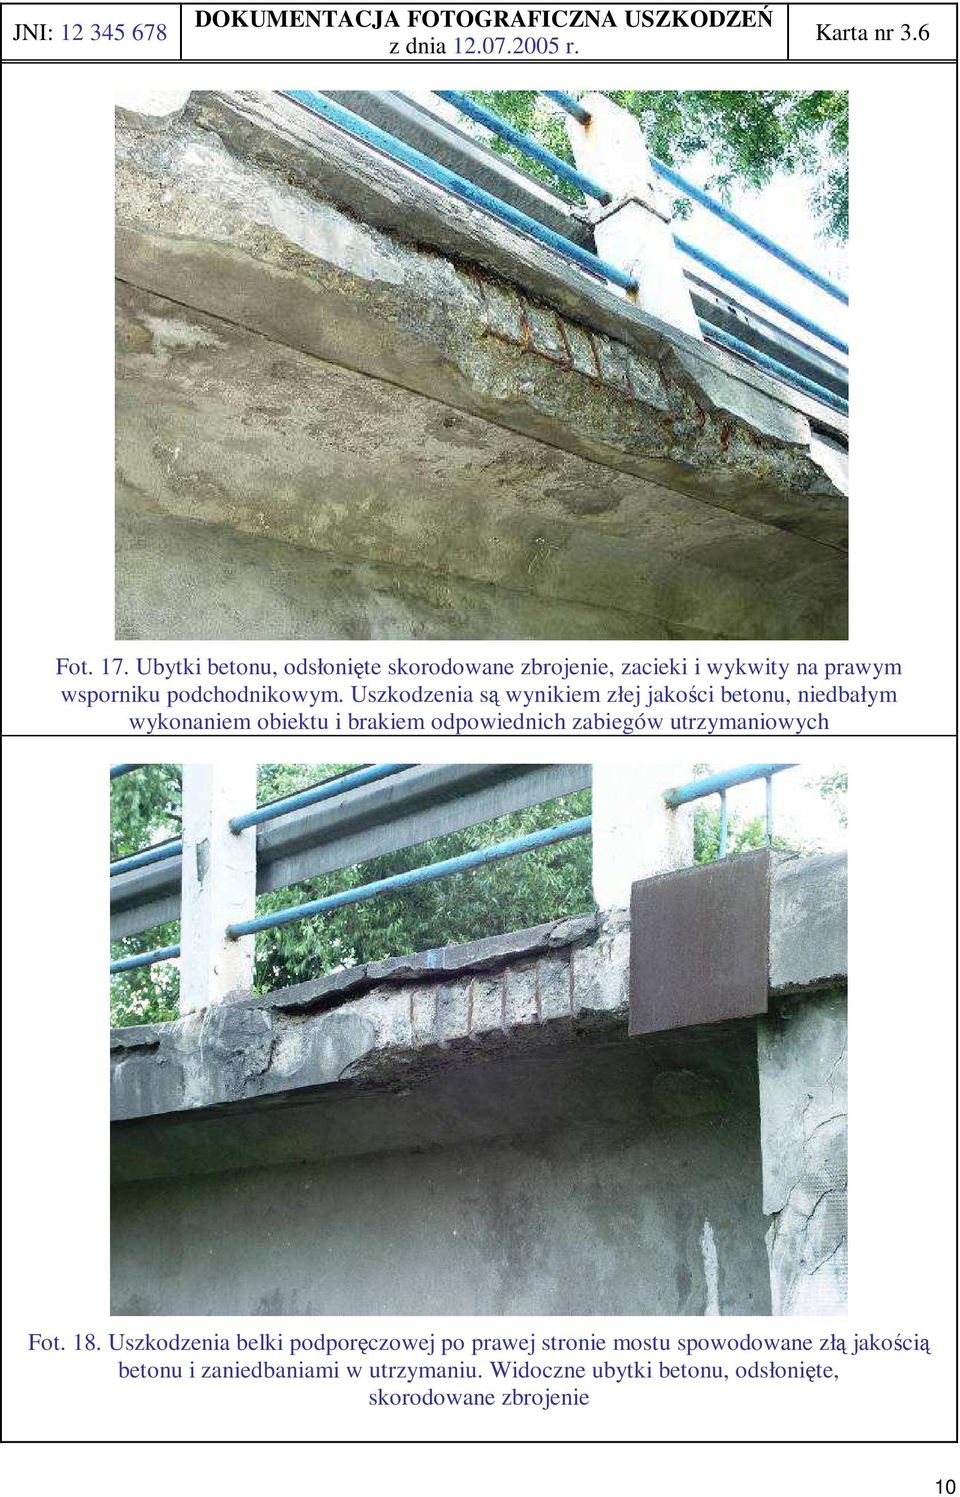 Uszkodzenia wynikiem złej jakości betonu, niedbałym wykonaniem obiektu i brakiem odpowiednich zabiegów utrzymaniowych Fot.